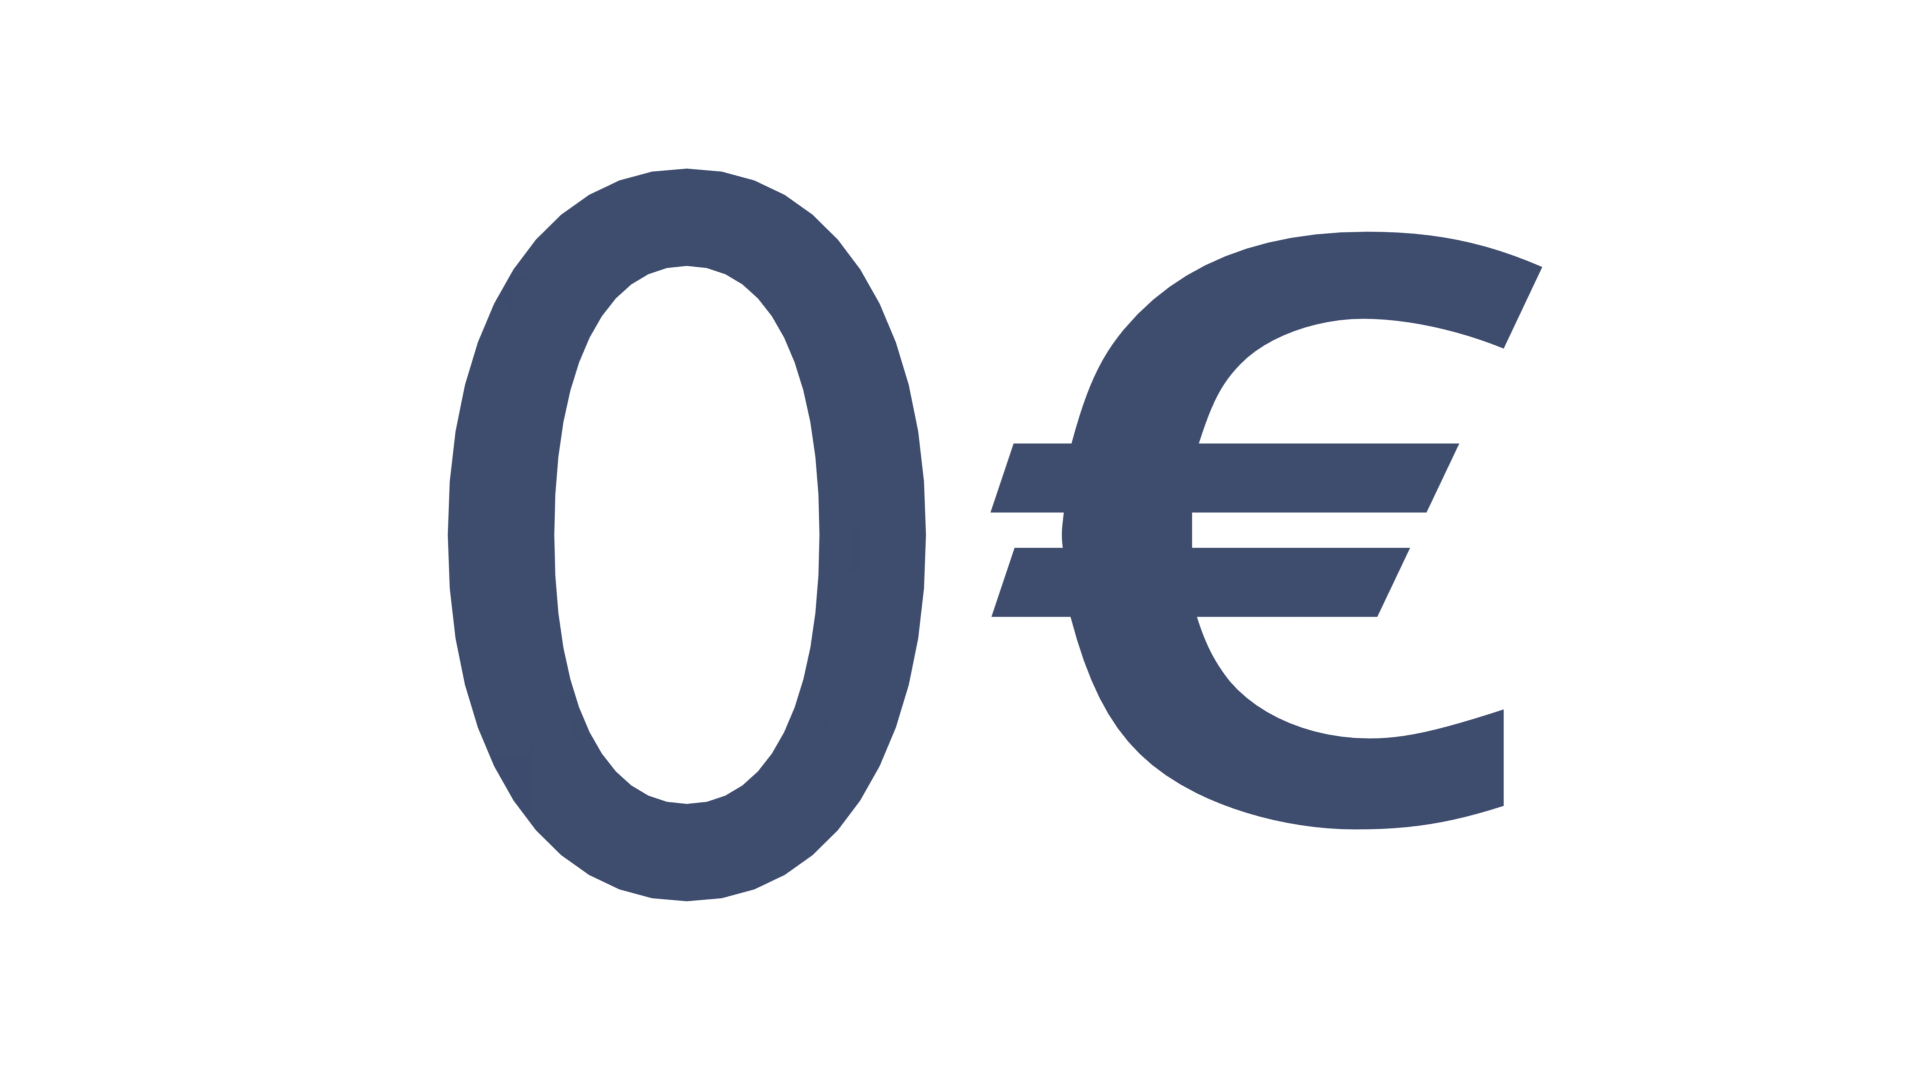 0€